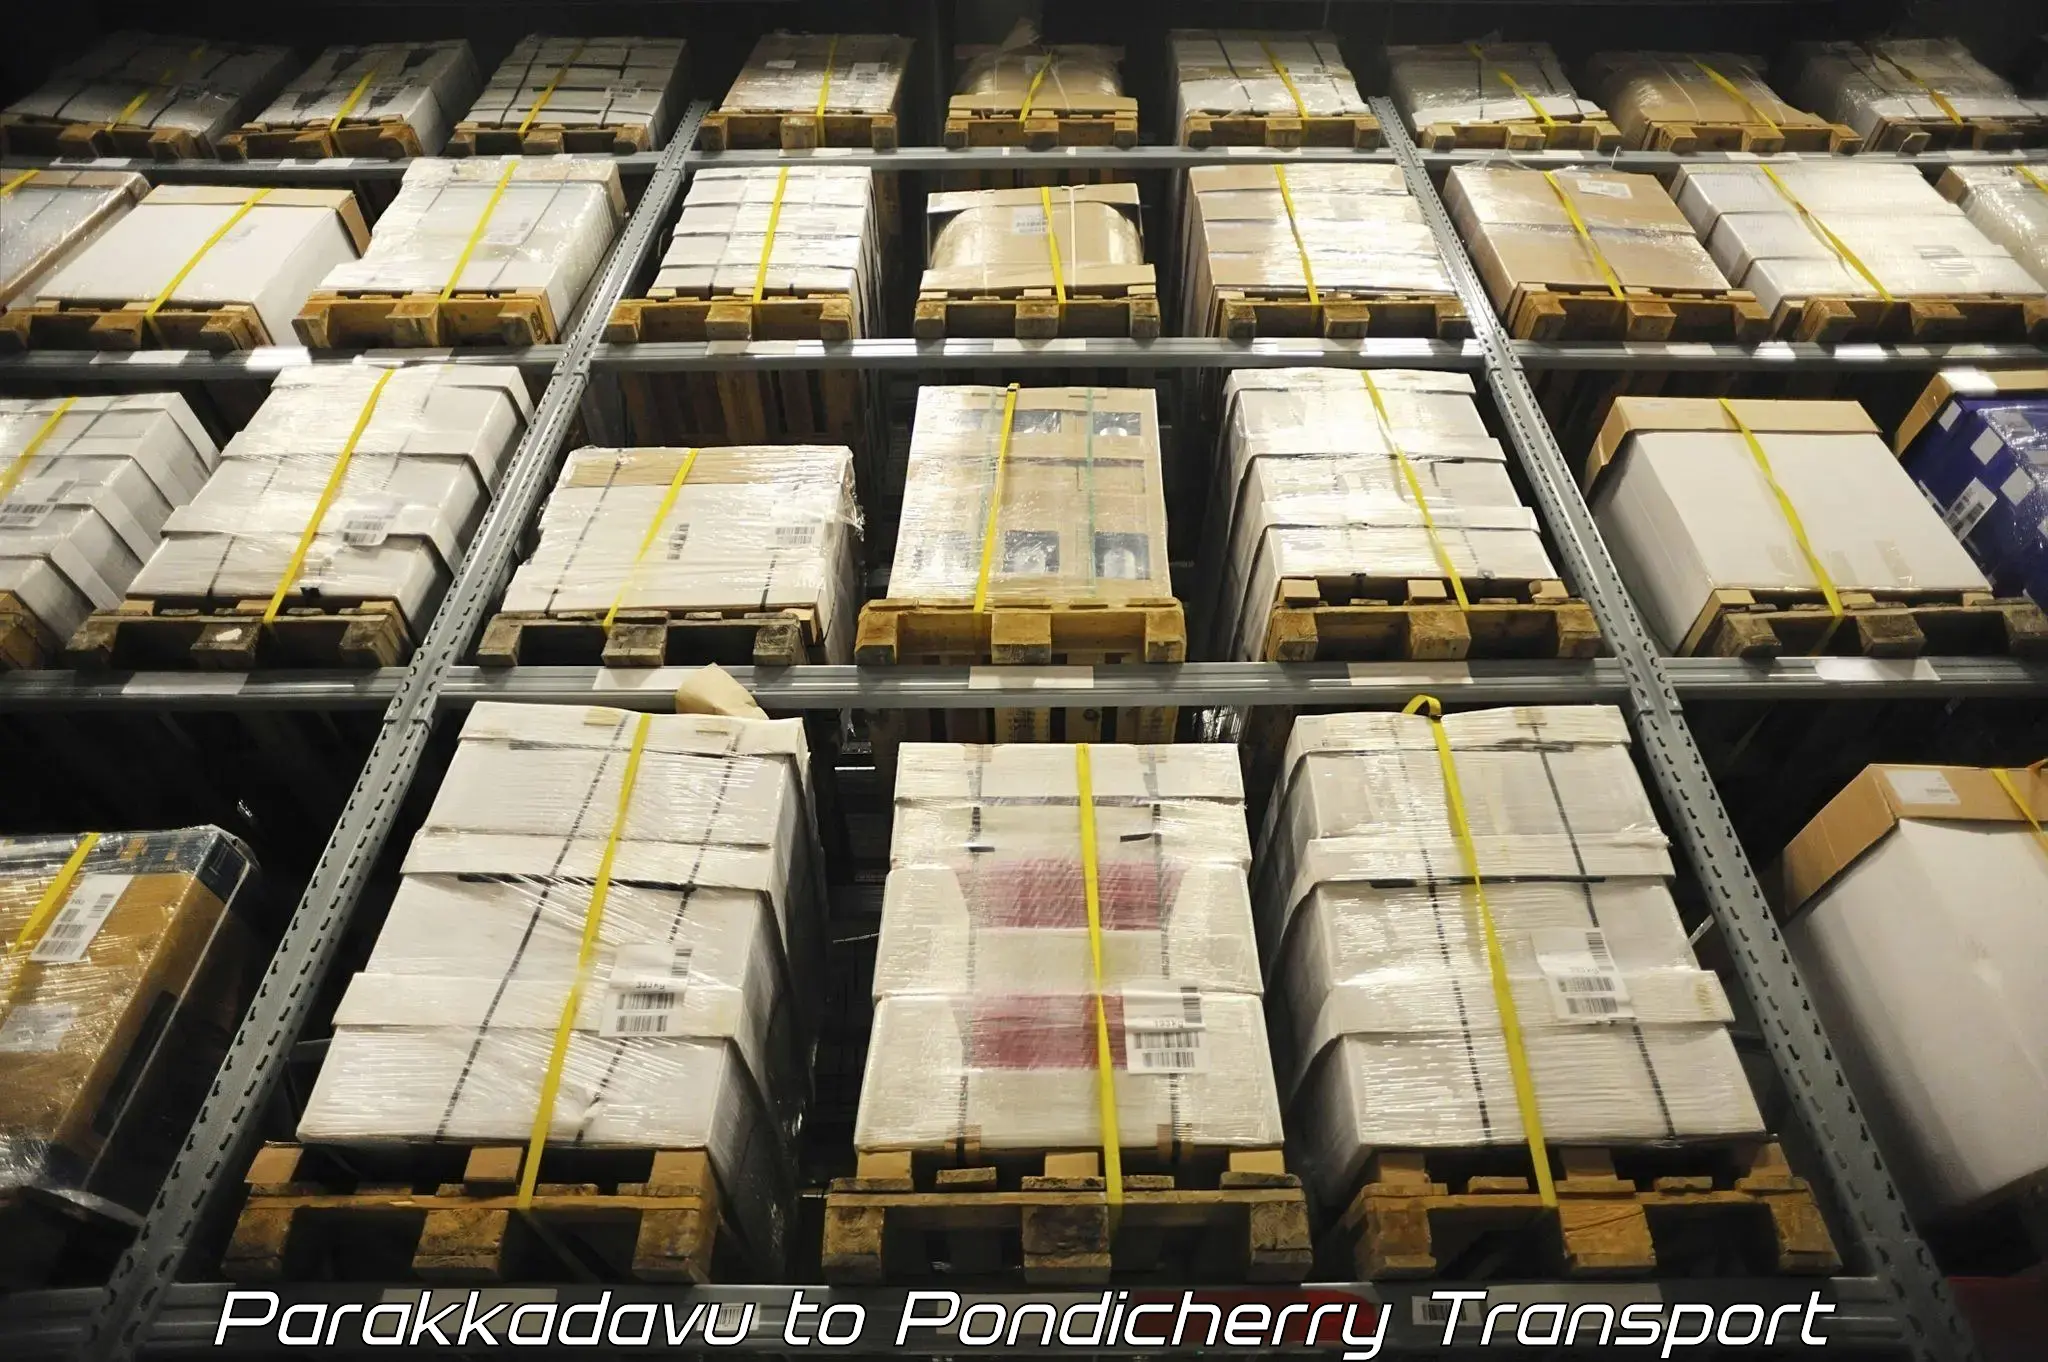 Cargo transport services in Parakkadavu to Pondicherry